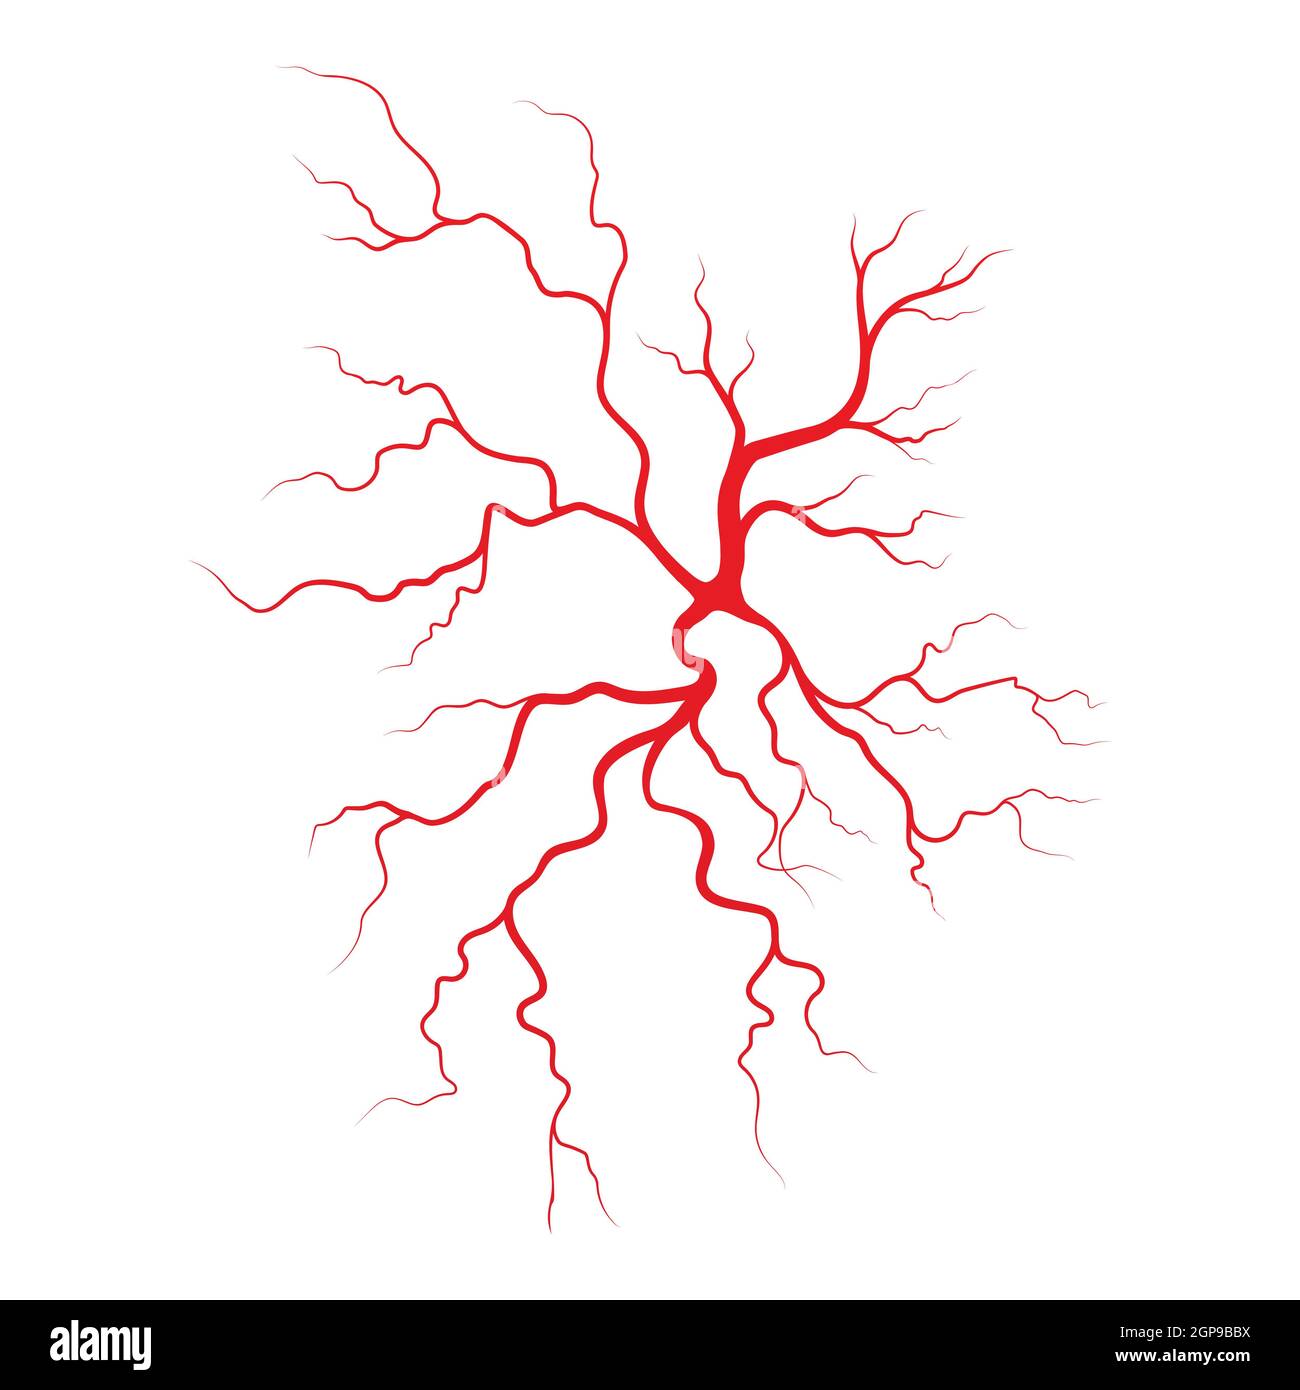 Les veines et les artères illustration design template Banque D'Images